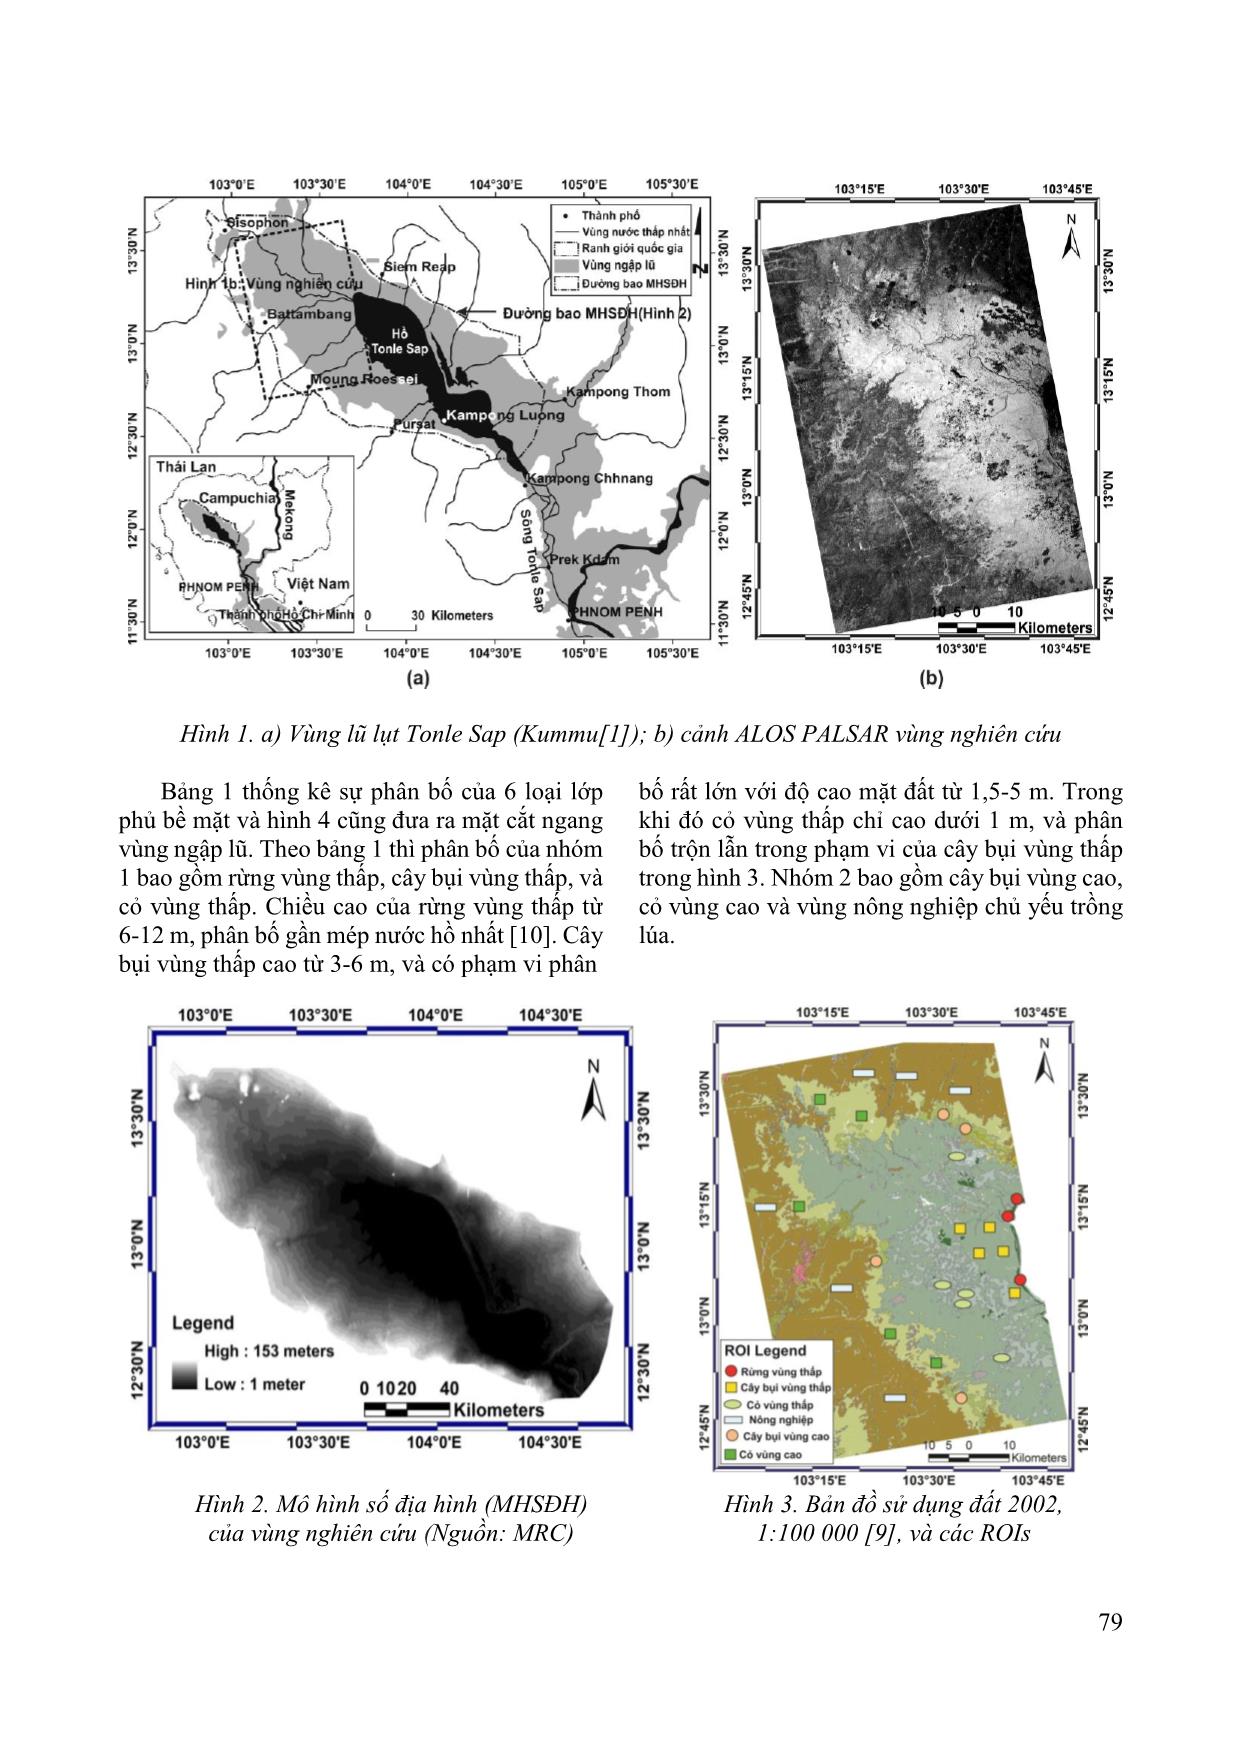 Sử dụng ảnh Alos Palsar để xây dựng mô hình thay đổi hệ số tán xạ phản hồi ở vùng Tonle Sap, Campuchia trang 2